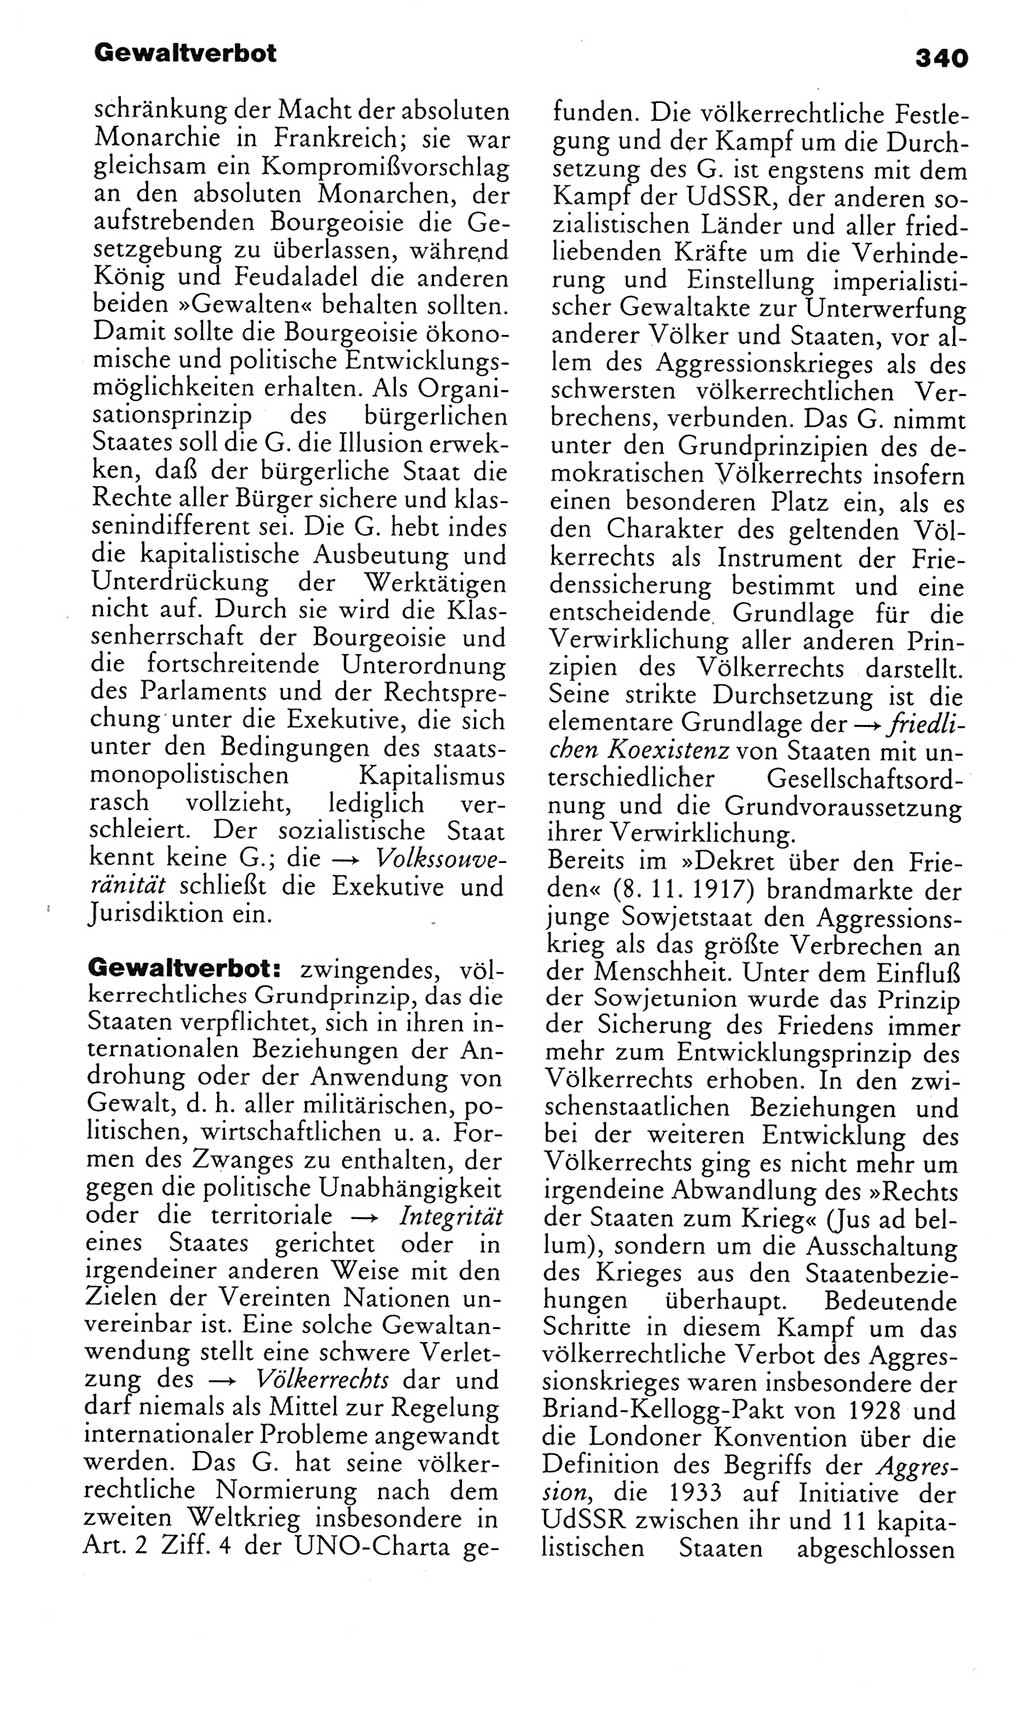 Kleines politisches Wörterbuch [Deutsche Demokratische Republik (DDR)] 1985, Seite 340 (Kl. pol. Wb. DDR 1985, S. 340)